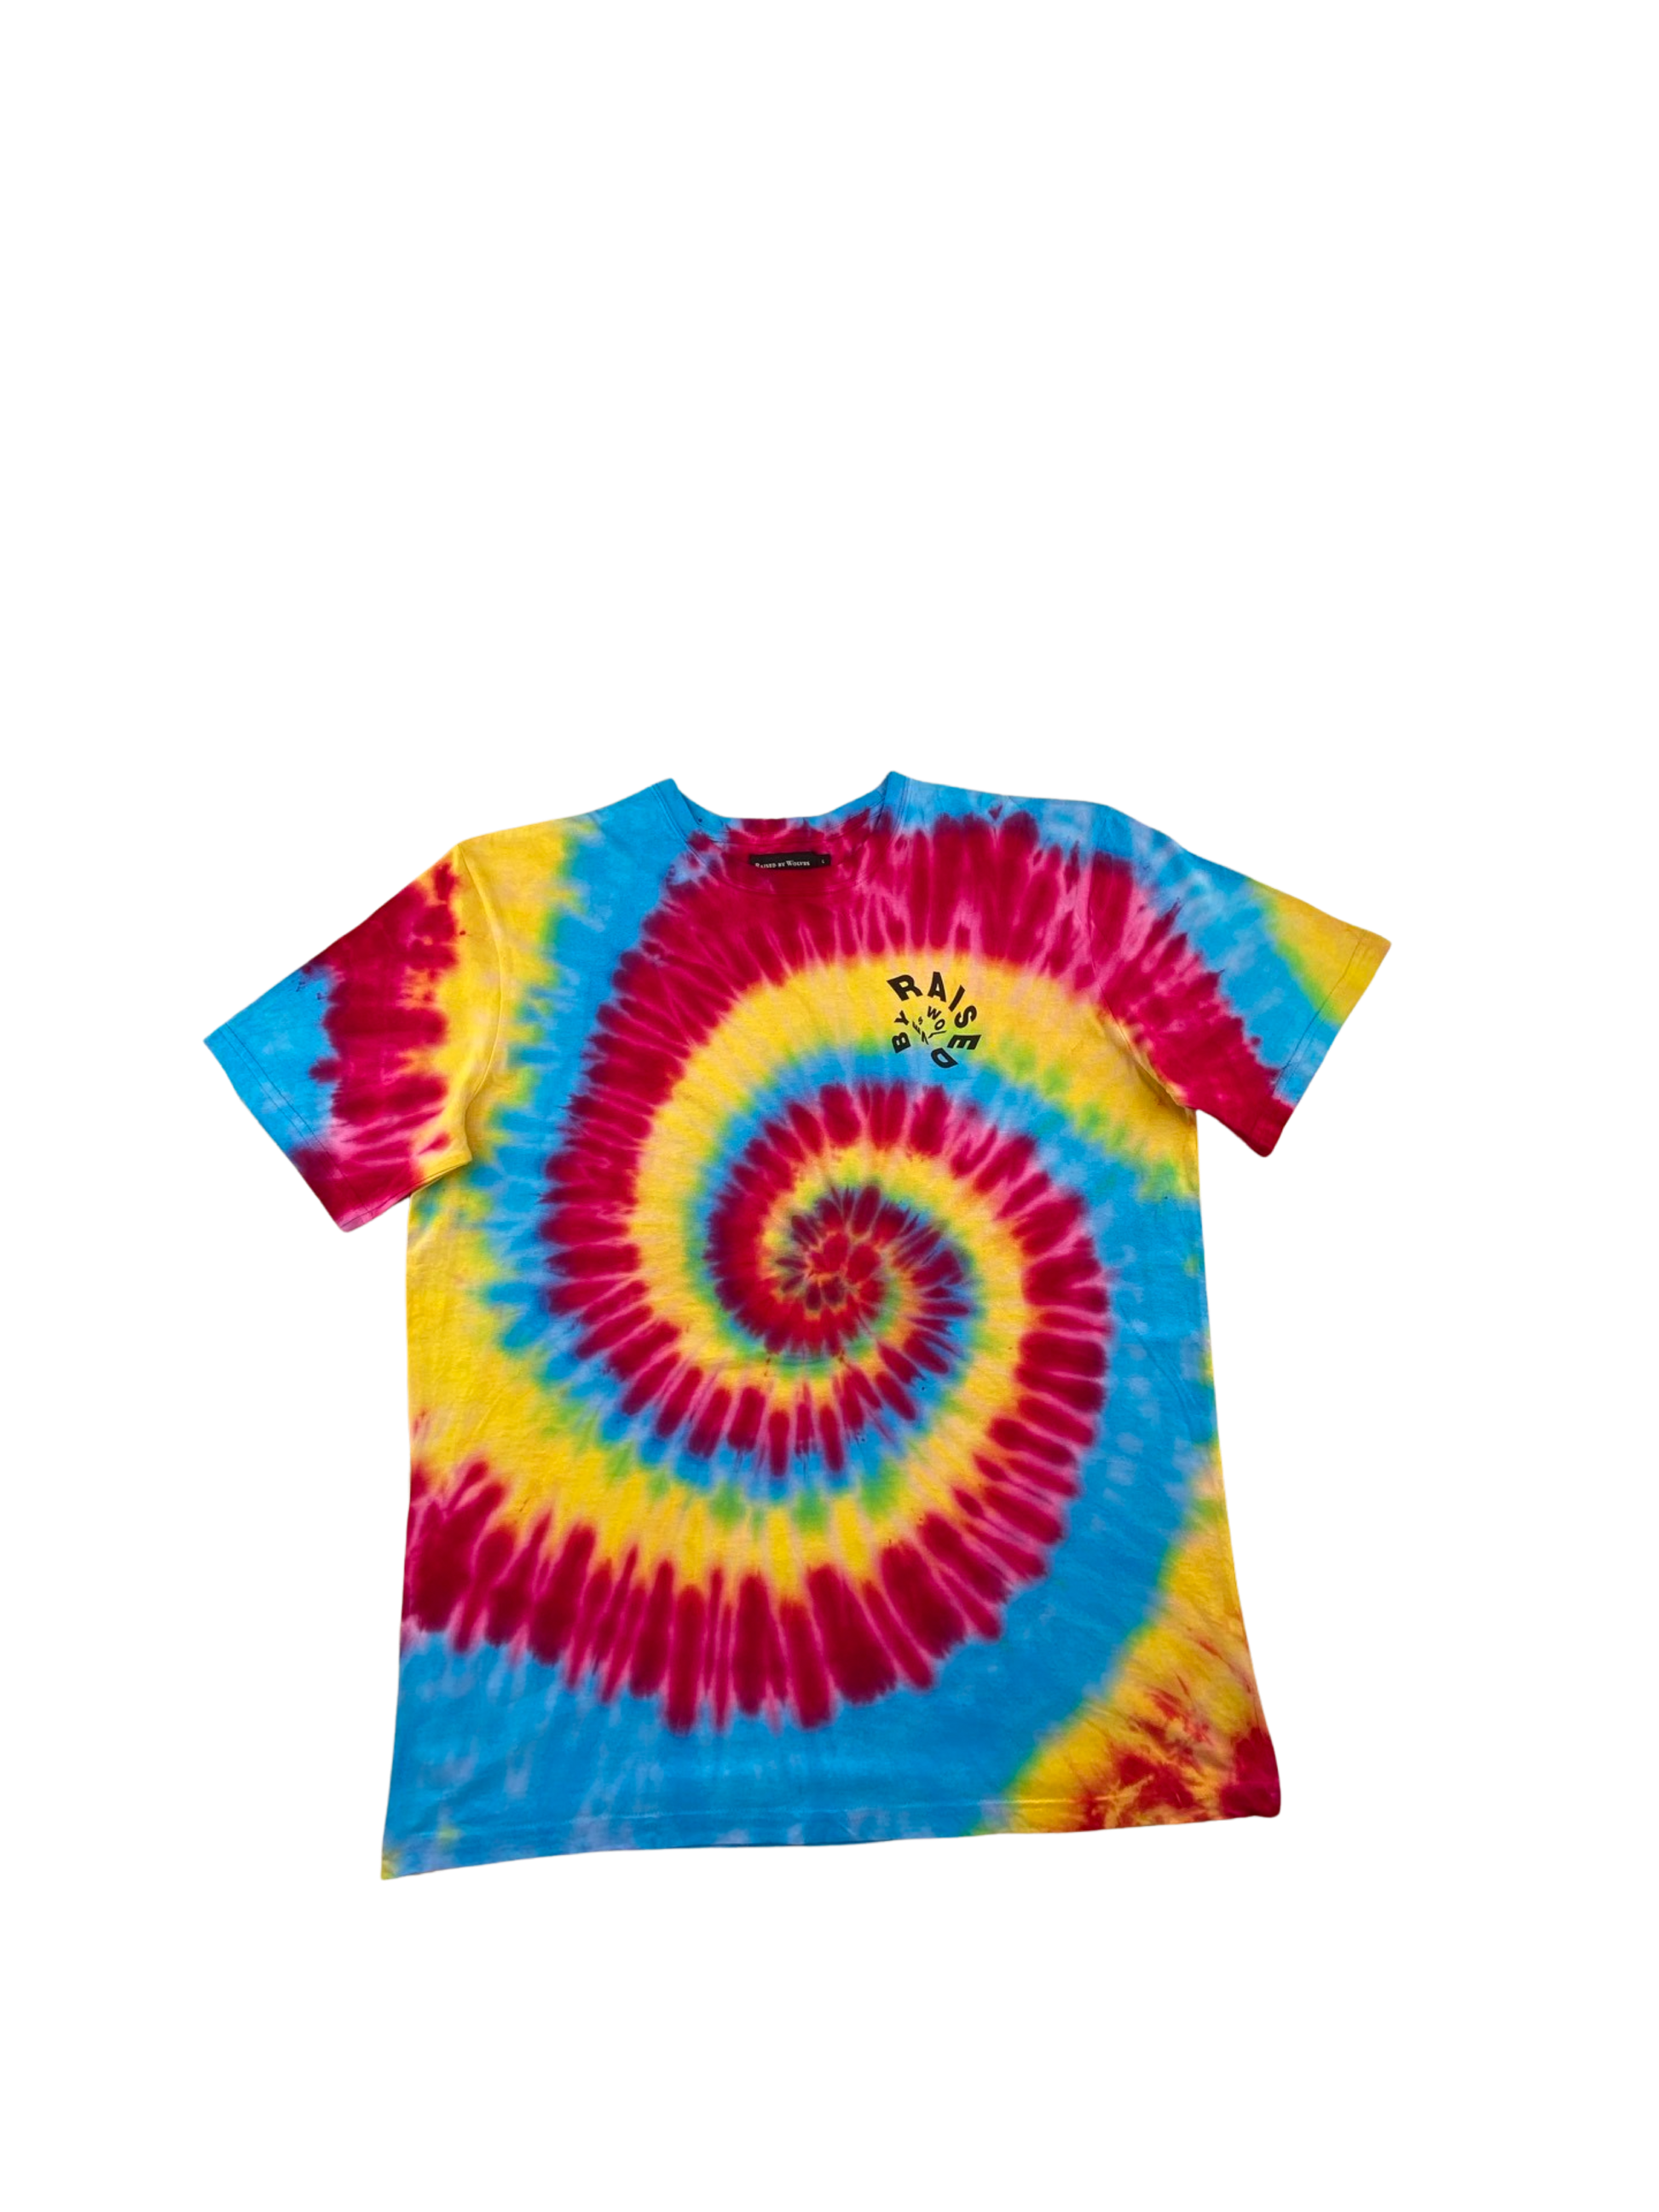 Raised by Wolves Tee "Spiral" -multi, T-Shirt von der Marke:raised by wolves, in gelb, rot und blau geht hier eine spiralförmige Batik überlass fertig genähte Shirt, Streetwear